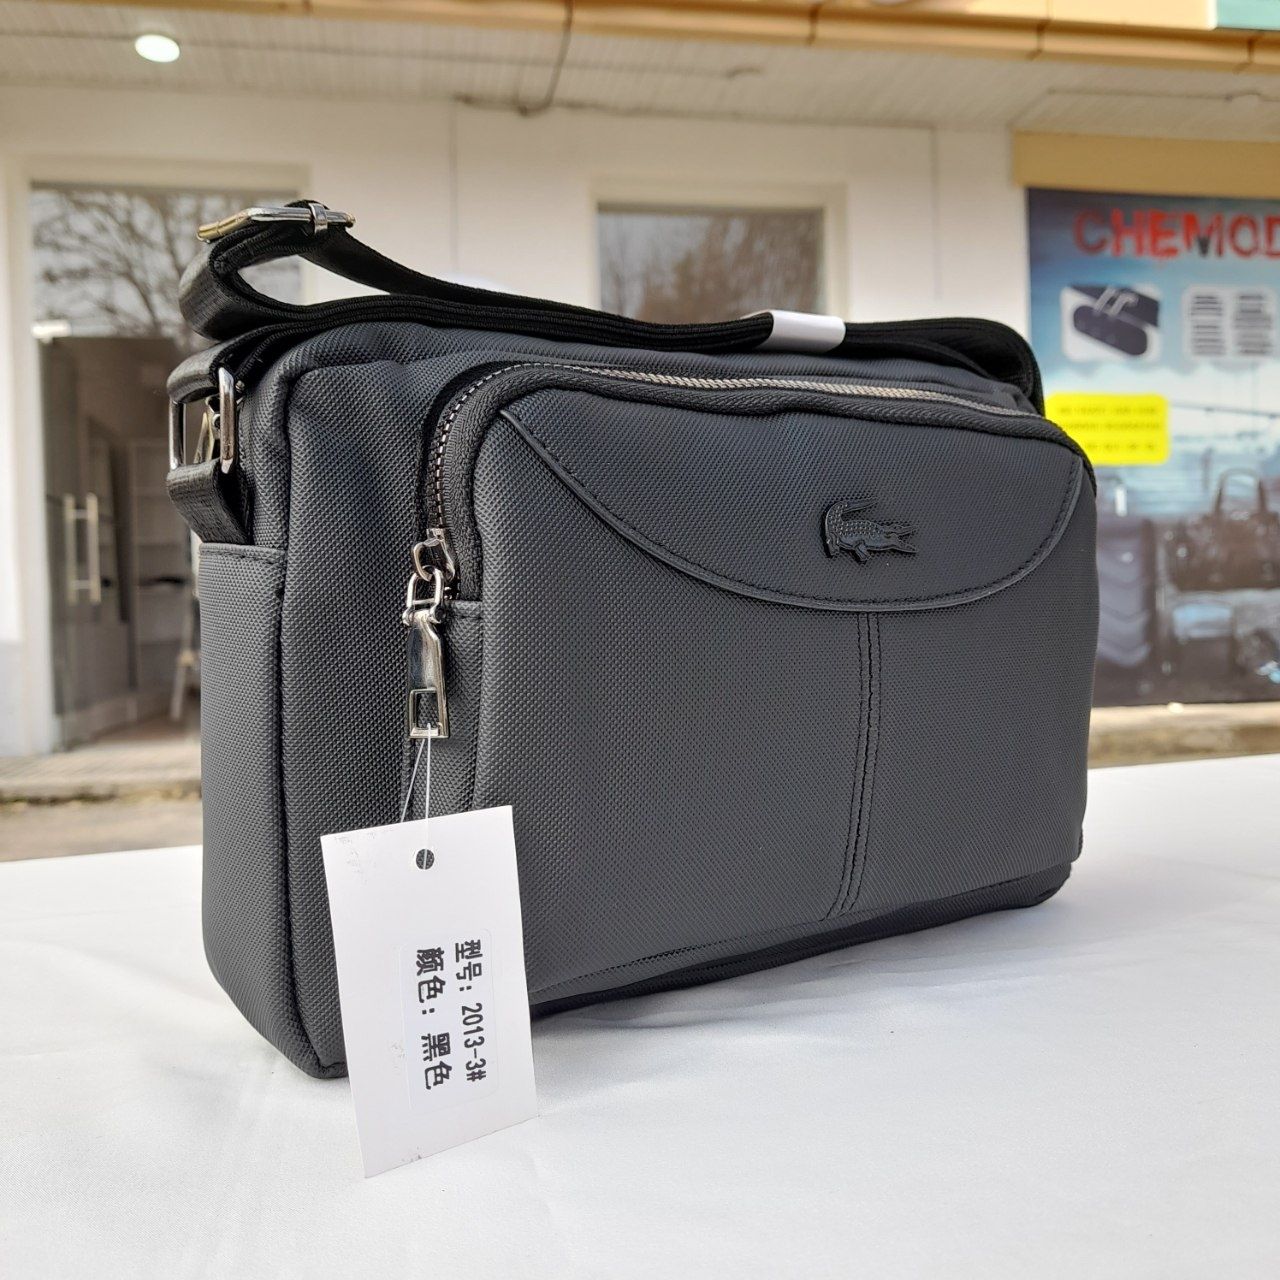 Мужской  натуральный кошелек барсетка сумка 2013-3  No:1177